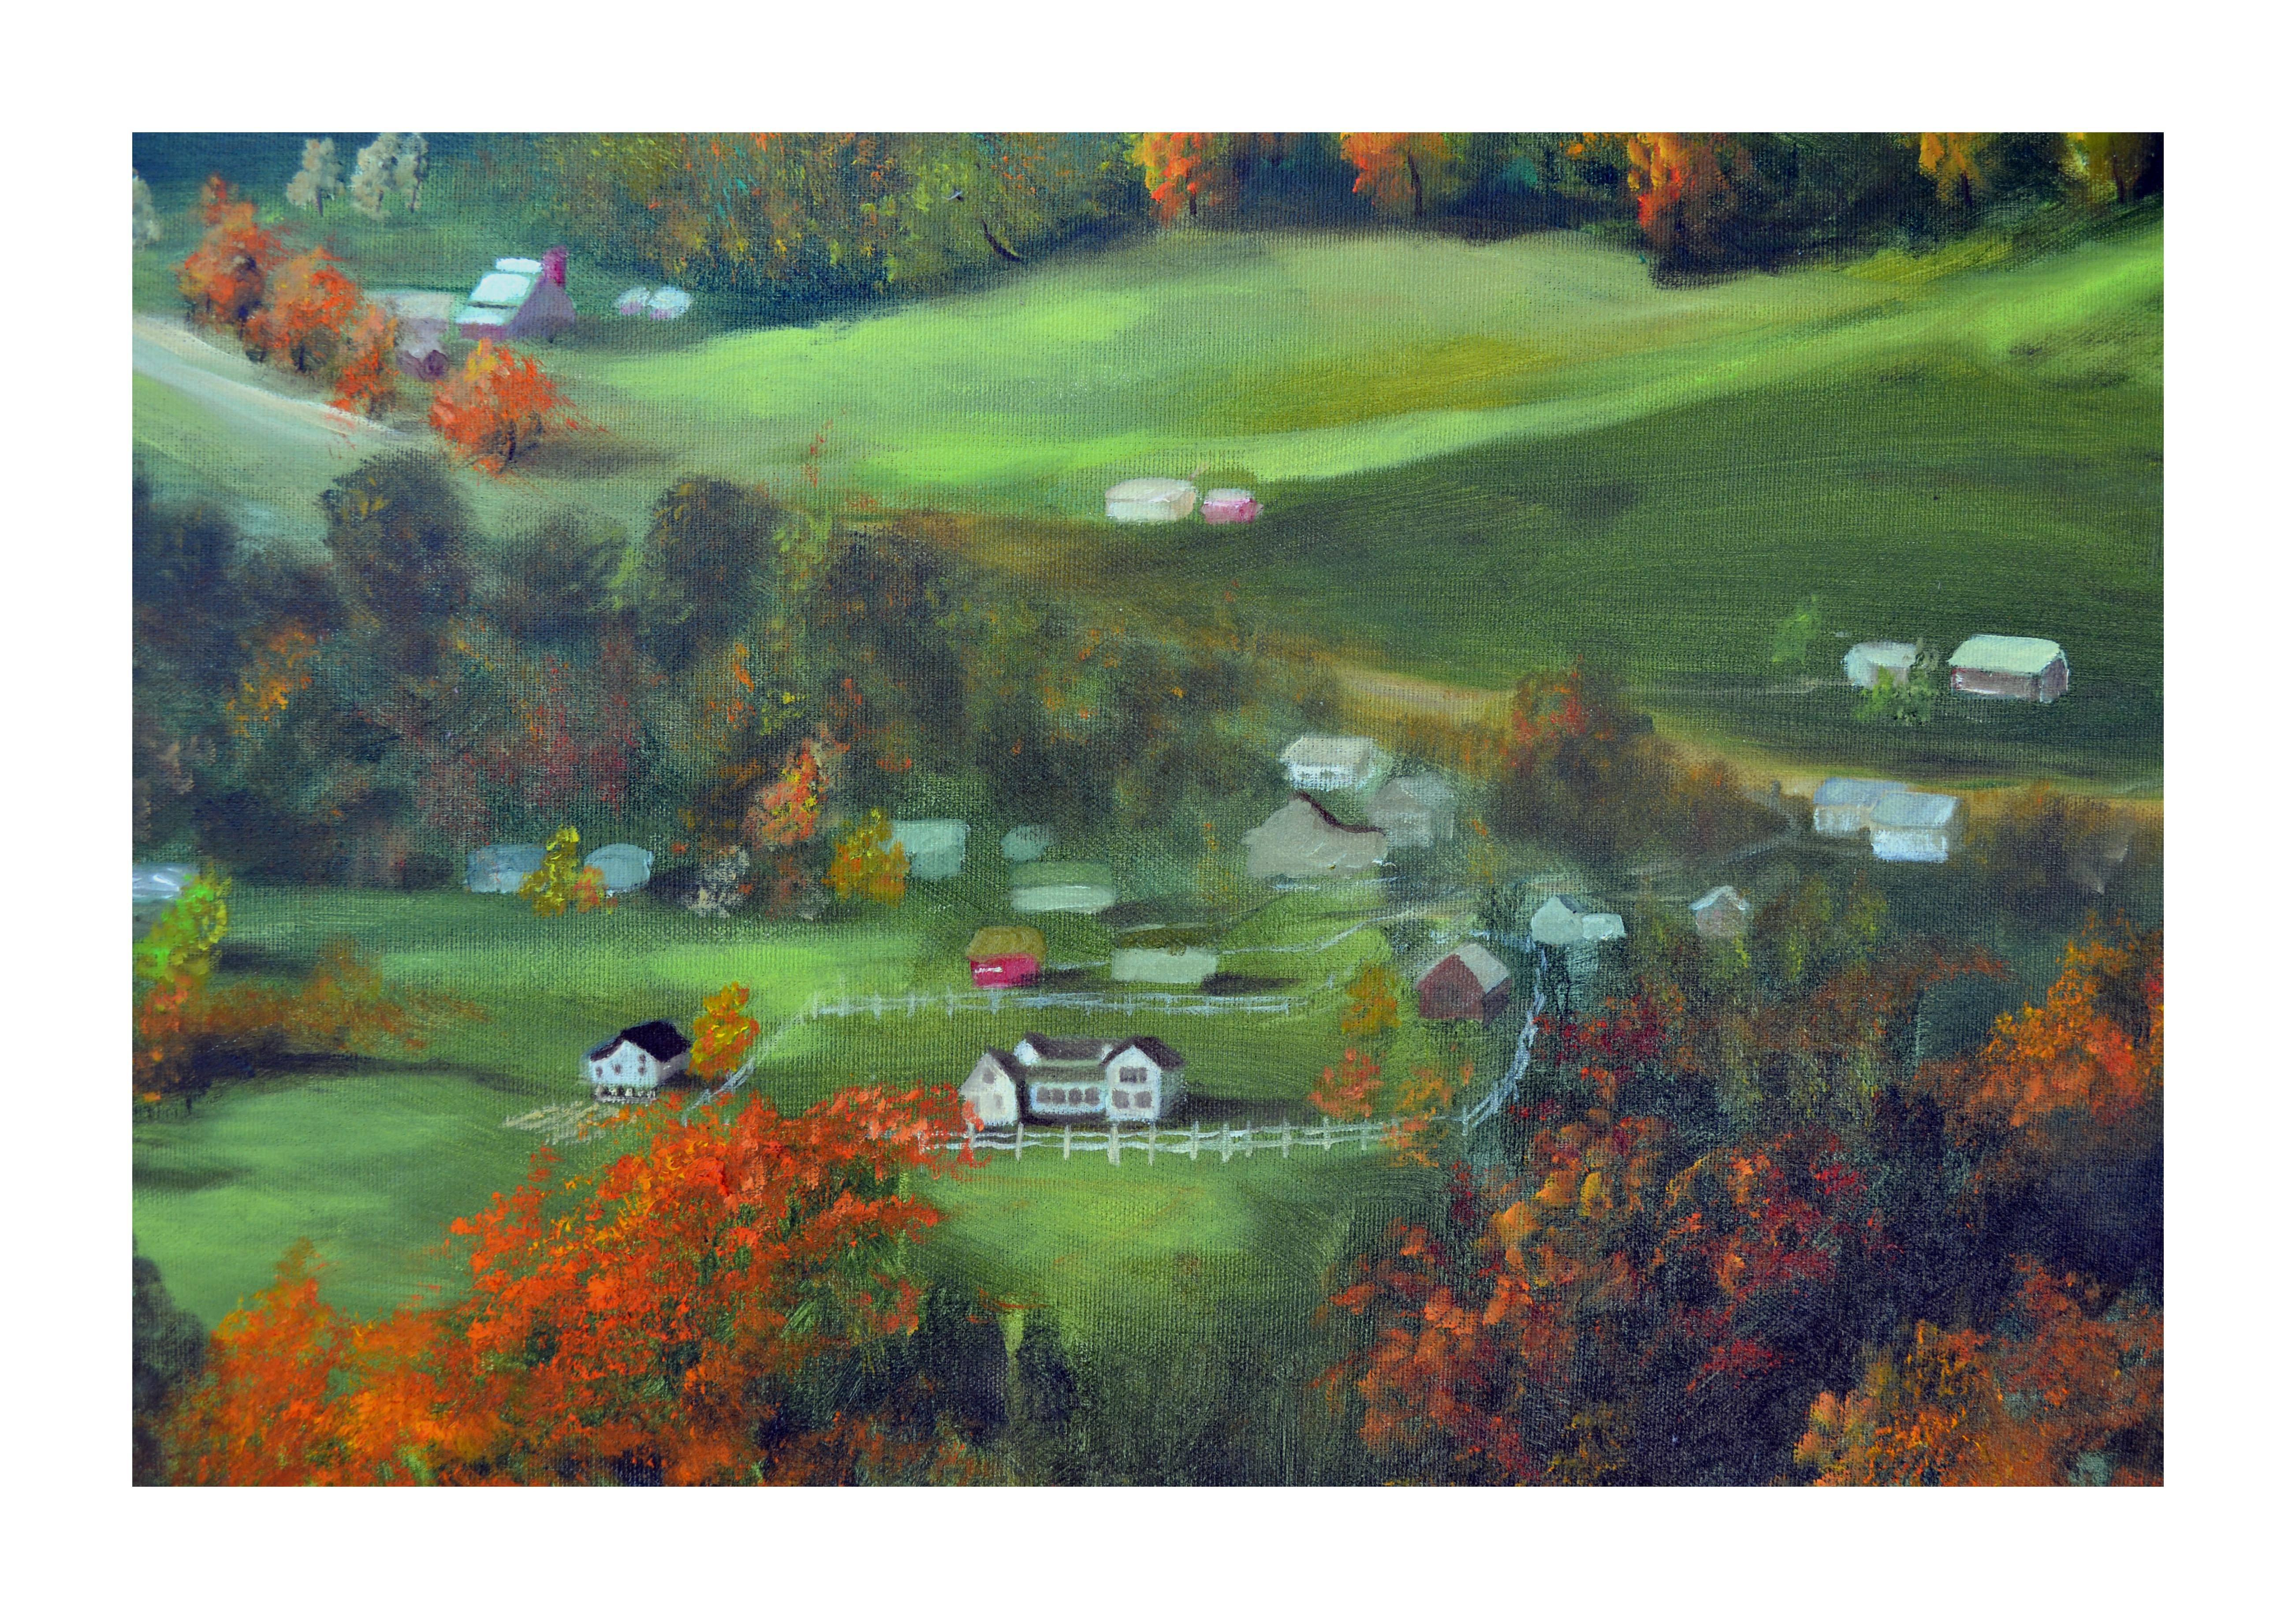 Autumn Valley - Painting by Bill Barnett